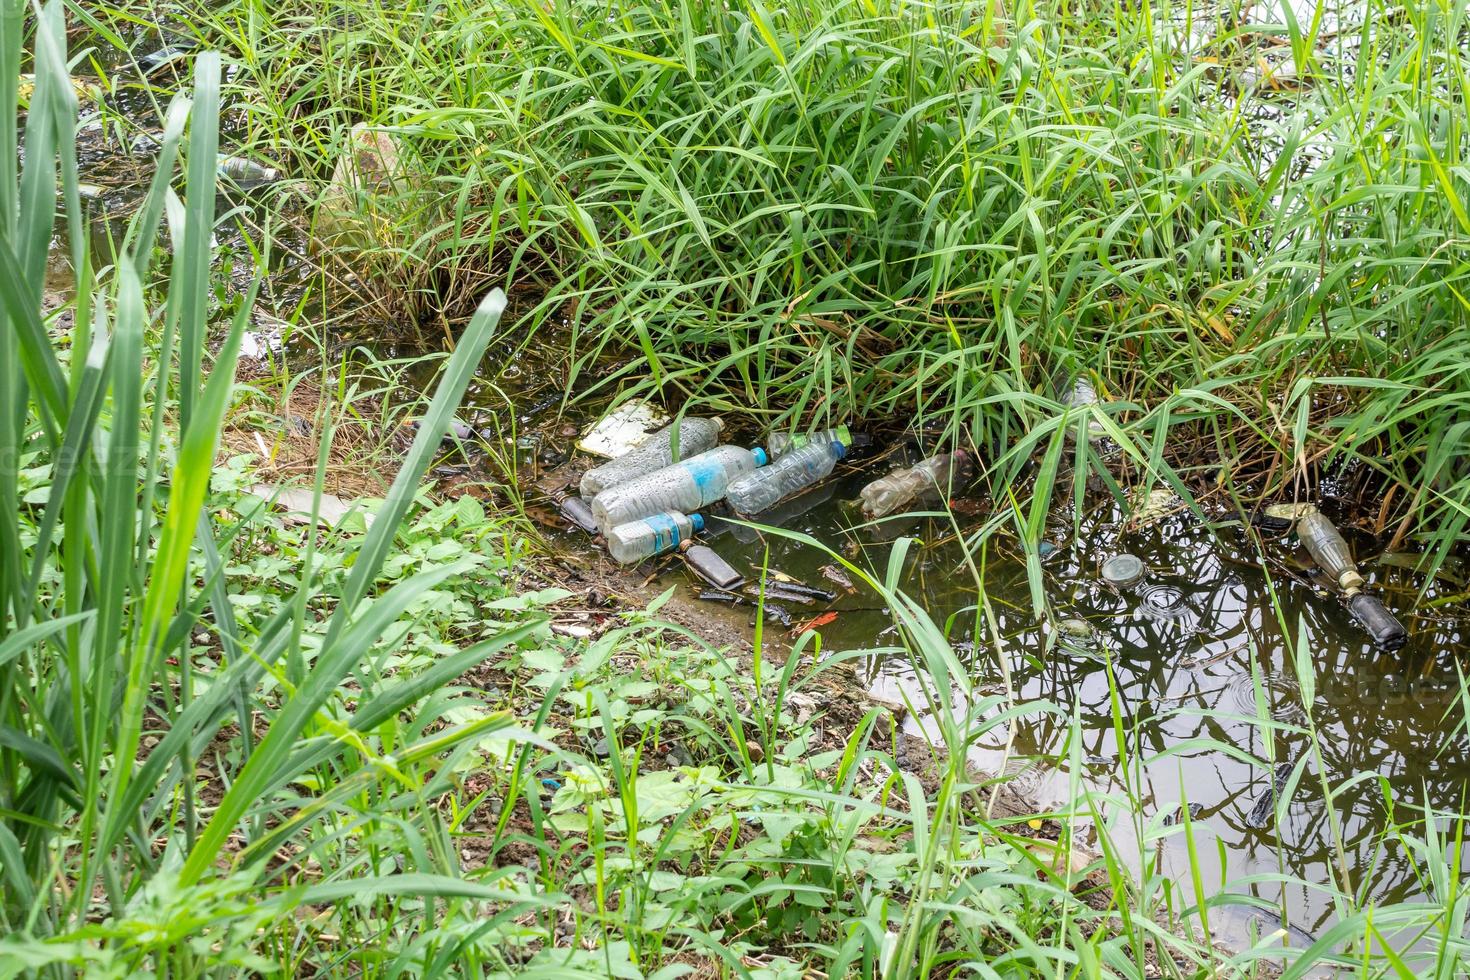 contaminación plástica en el entorno del estanque de agua foto